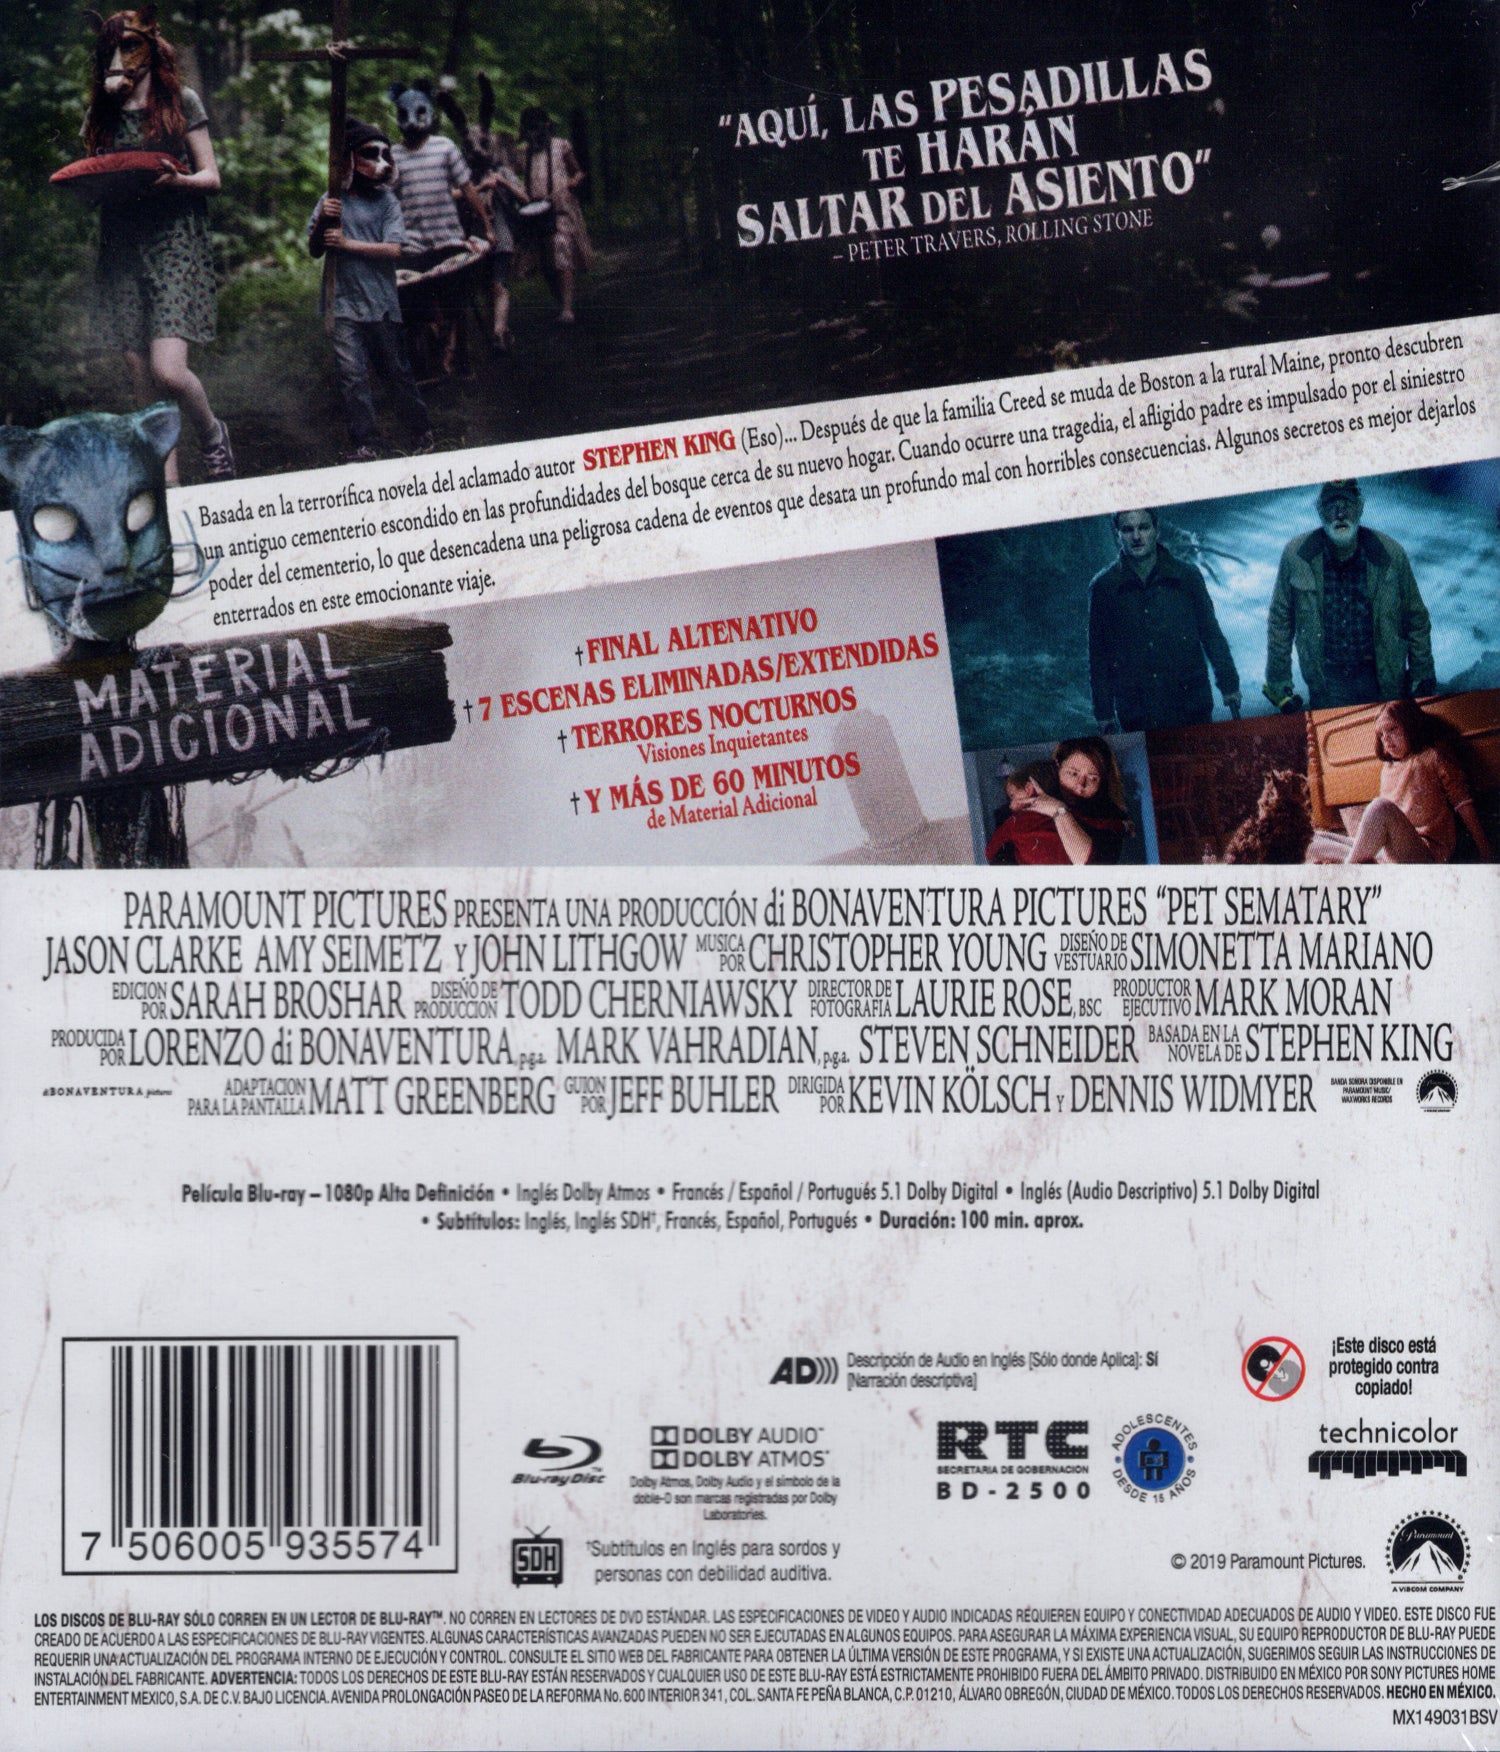 Cementerio Maldito de Stephen King Blu-ray